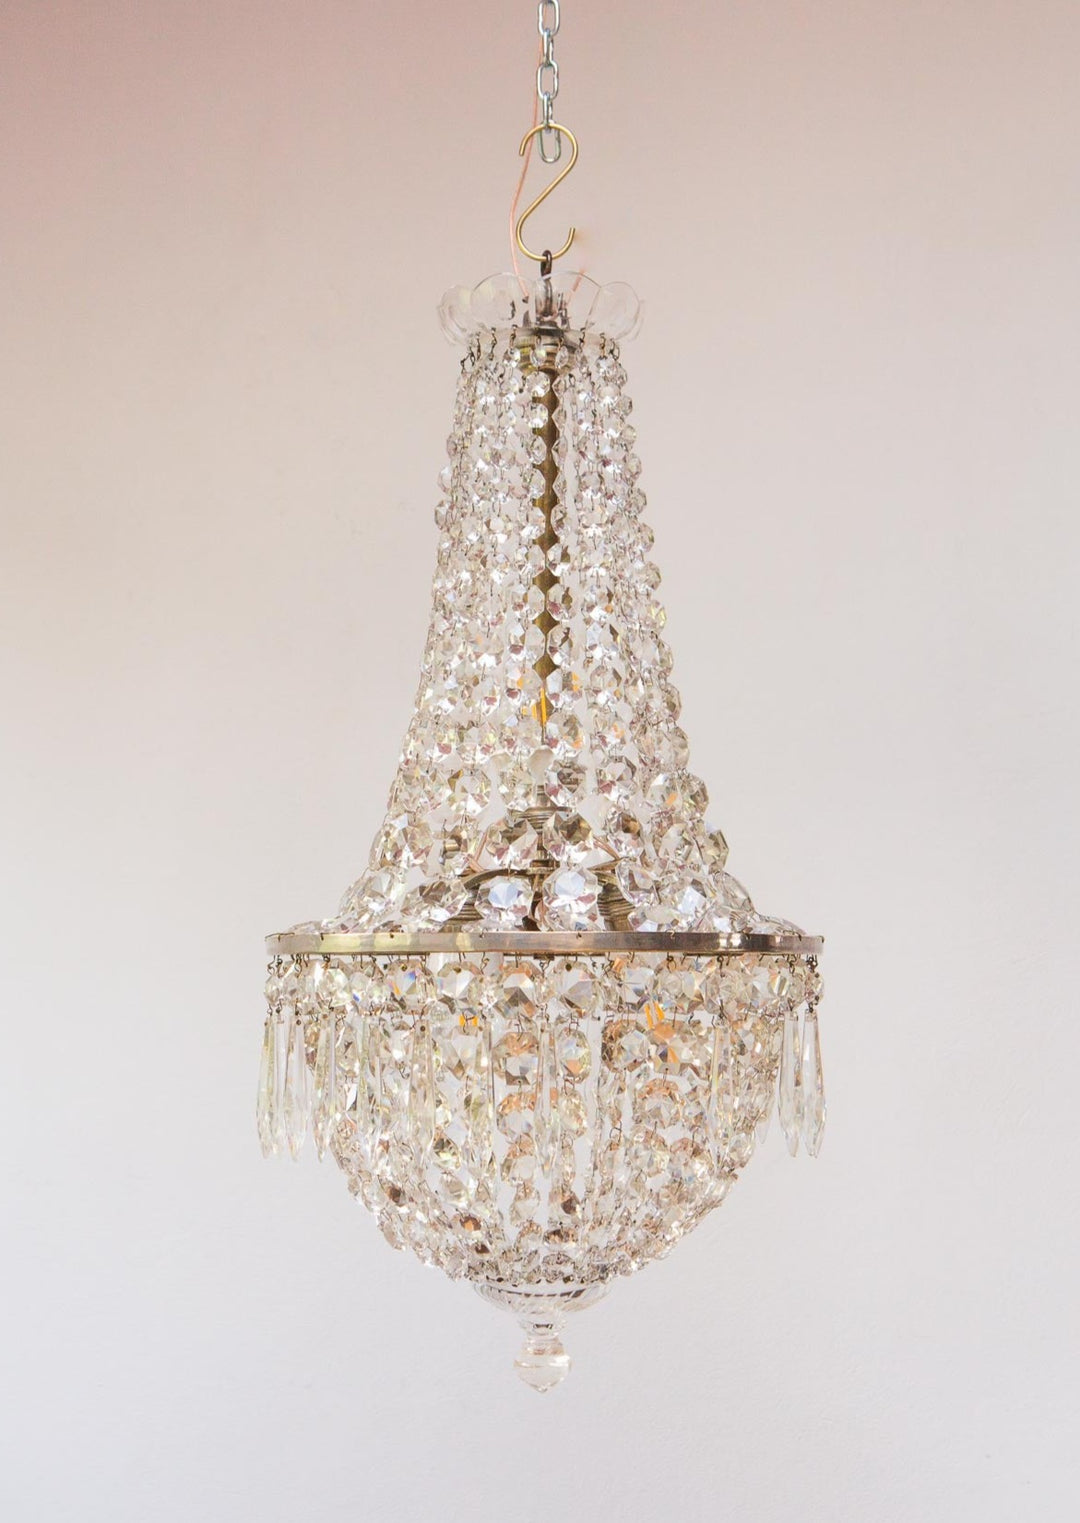 antigua lampara techo cristal tipo baccarat bronce plateado globo antique chandelier